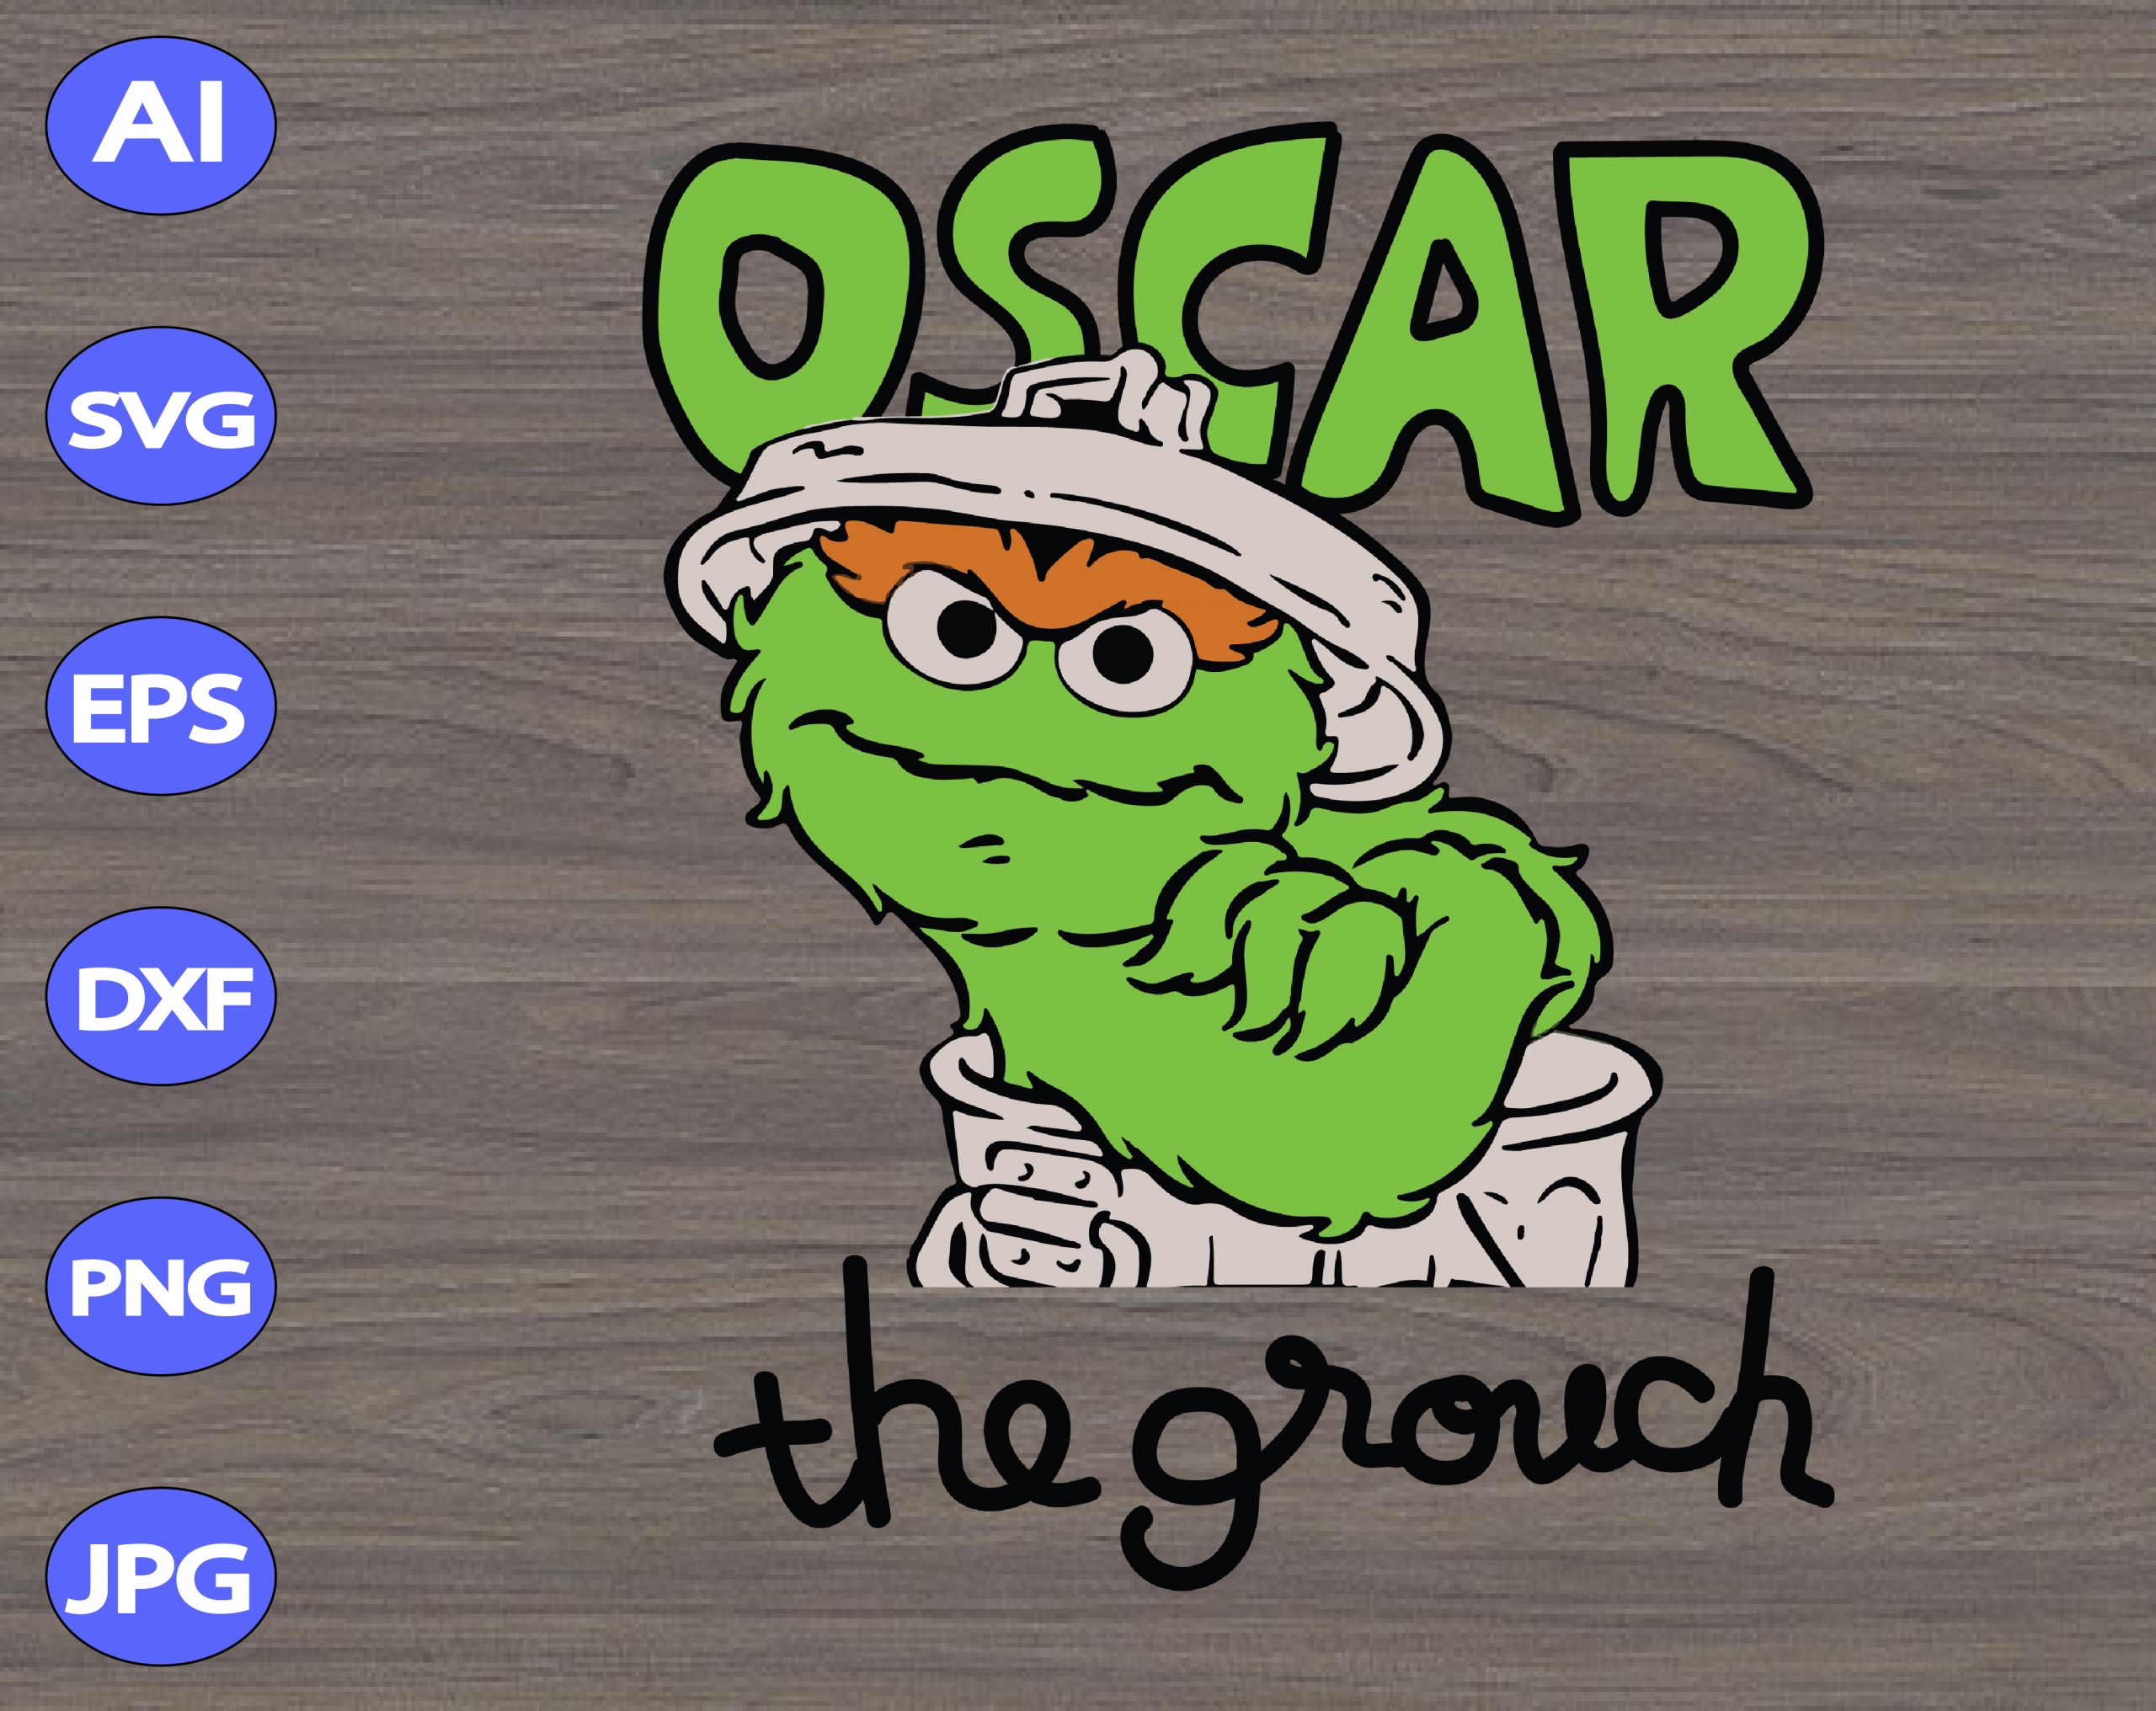 Oscar the grouch svg, dxf,eps,png, Digital Download – DesignBTF